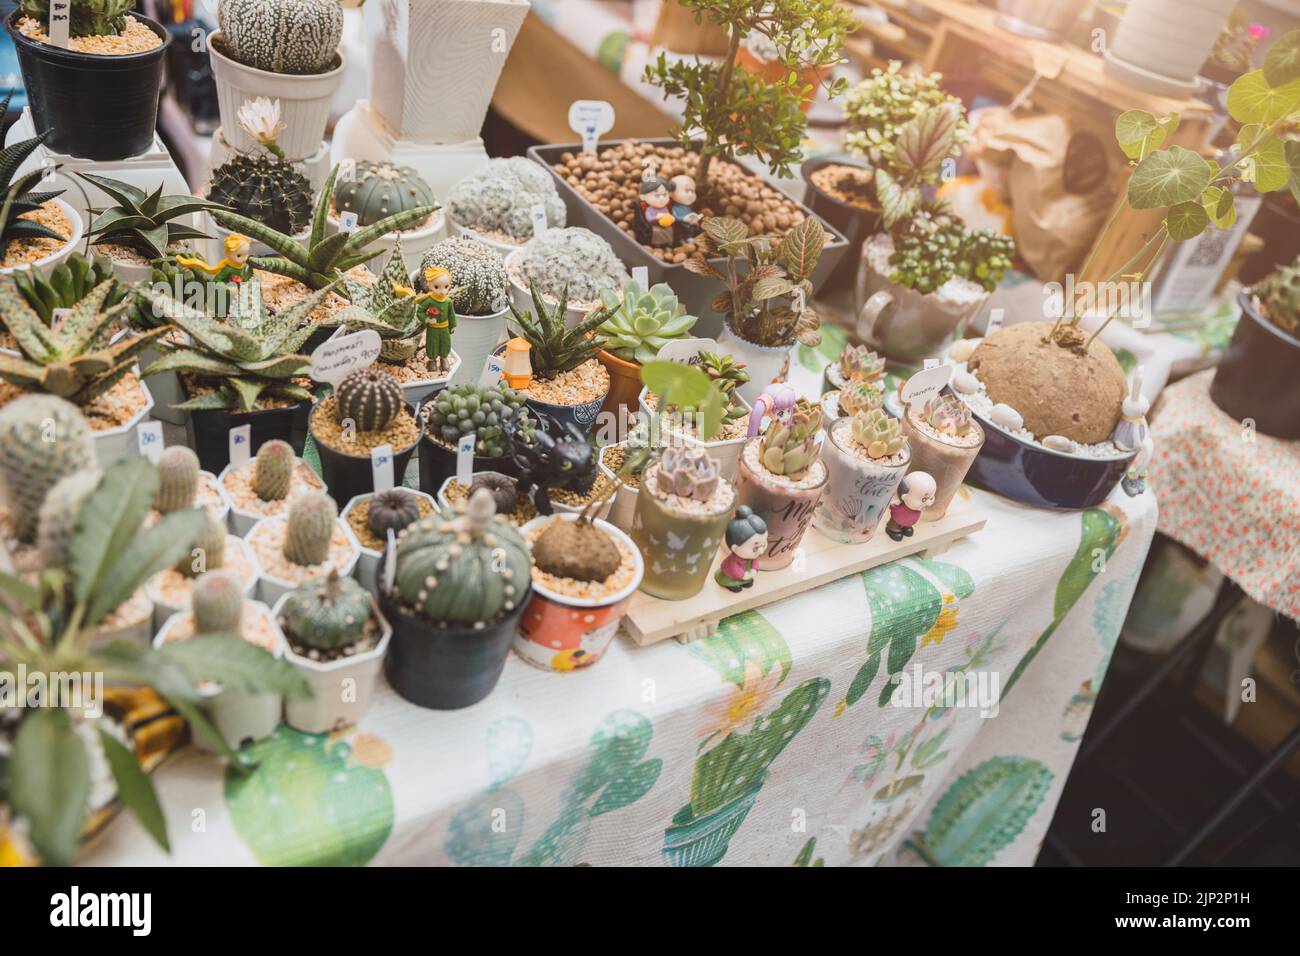 Kleine Kaktus eingetopft grüne Pflanze verkaufen bei Botanik Shop für Heimtextilien Stockfoto